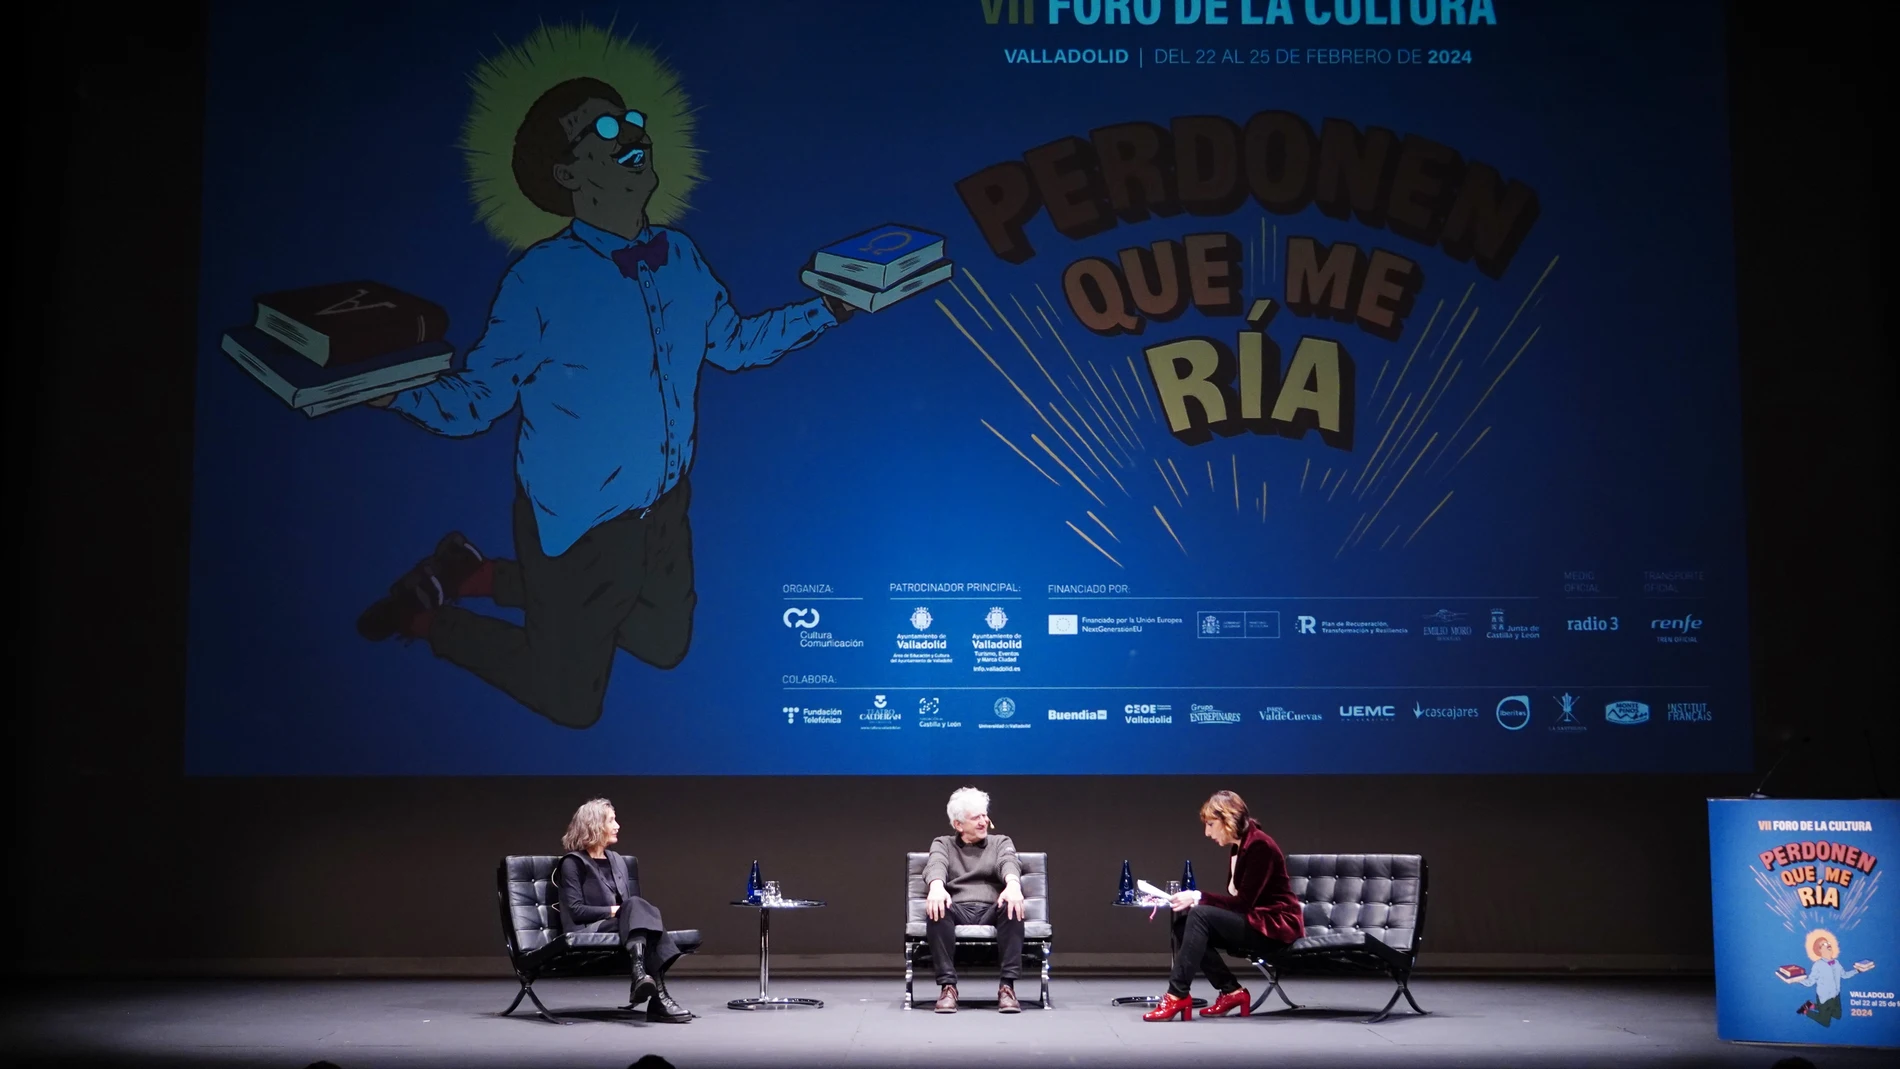 Juan Luis Arsuaga y Verónica O'keane, participan en el VII Foro de la Cultura